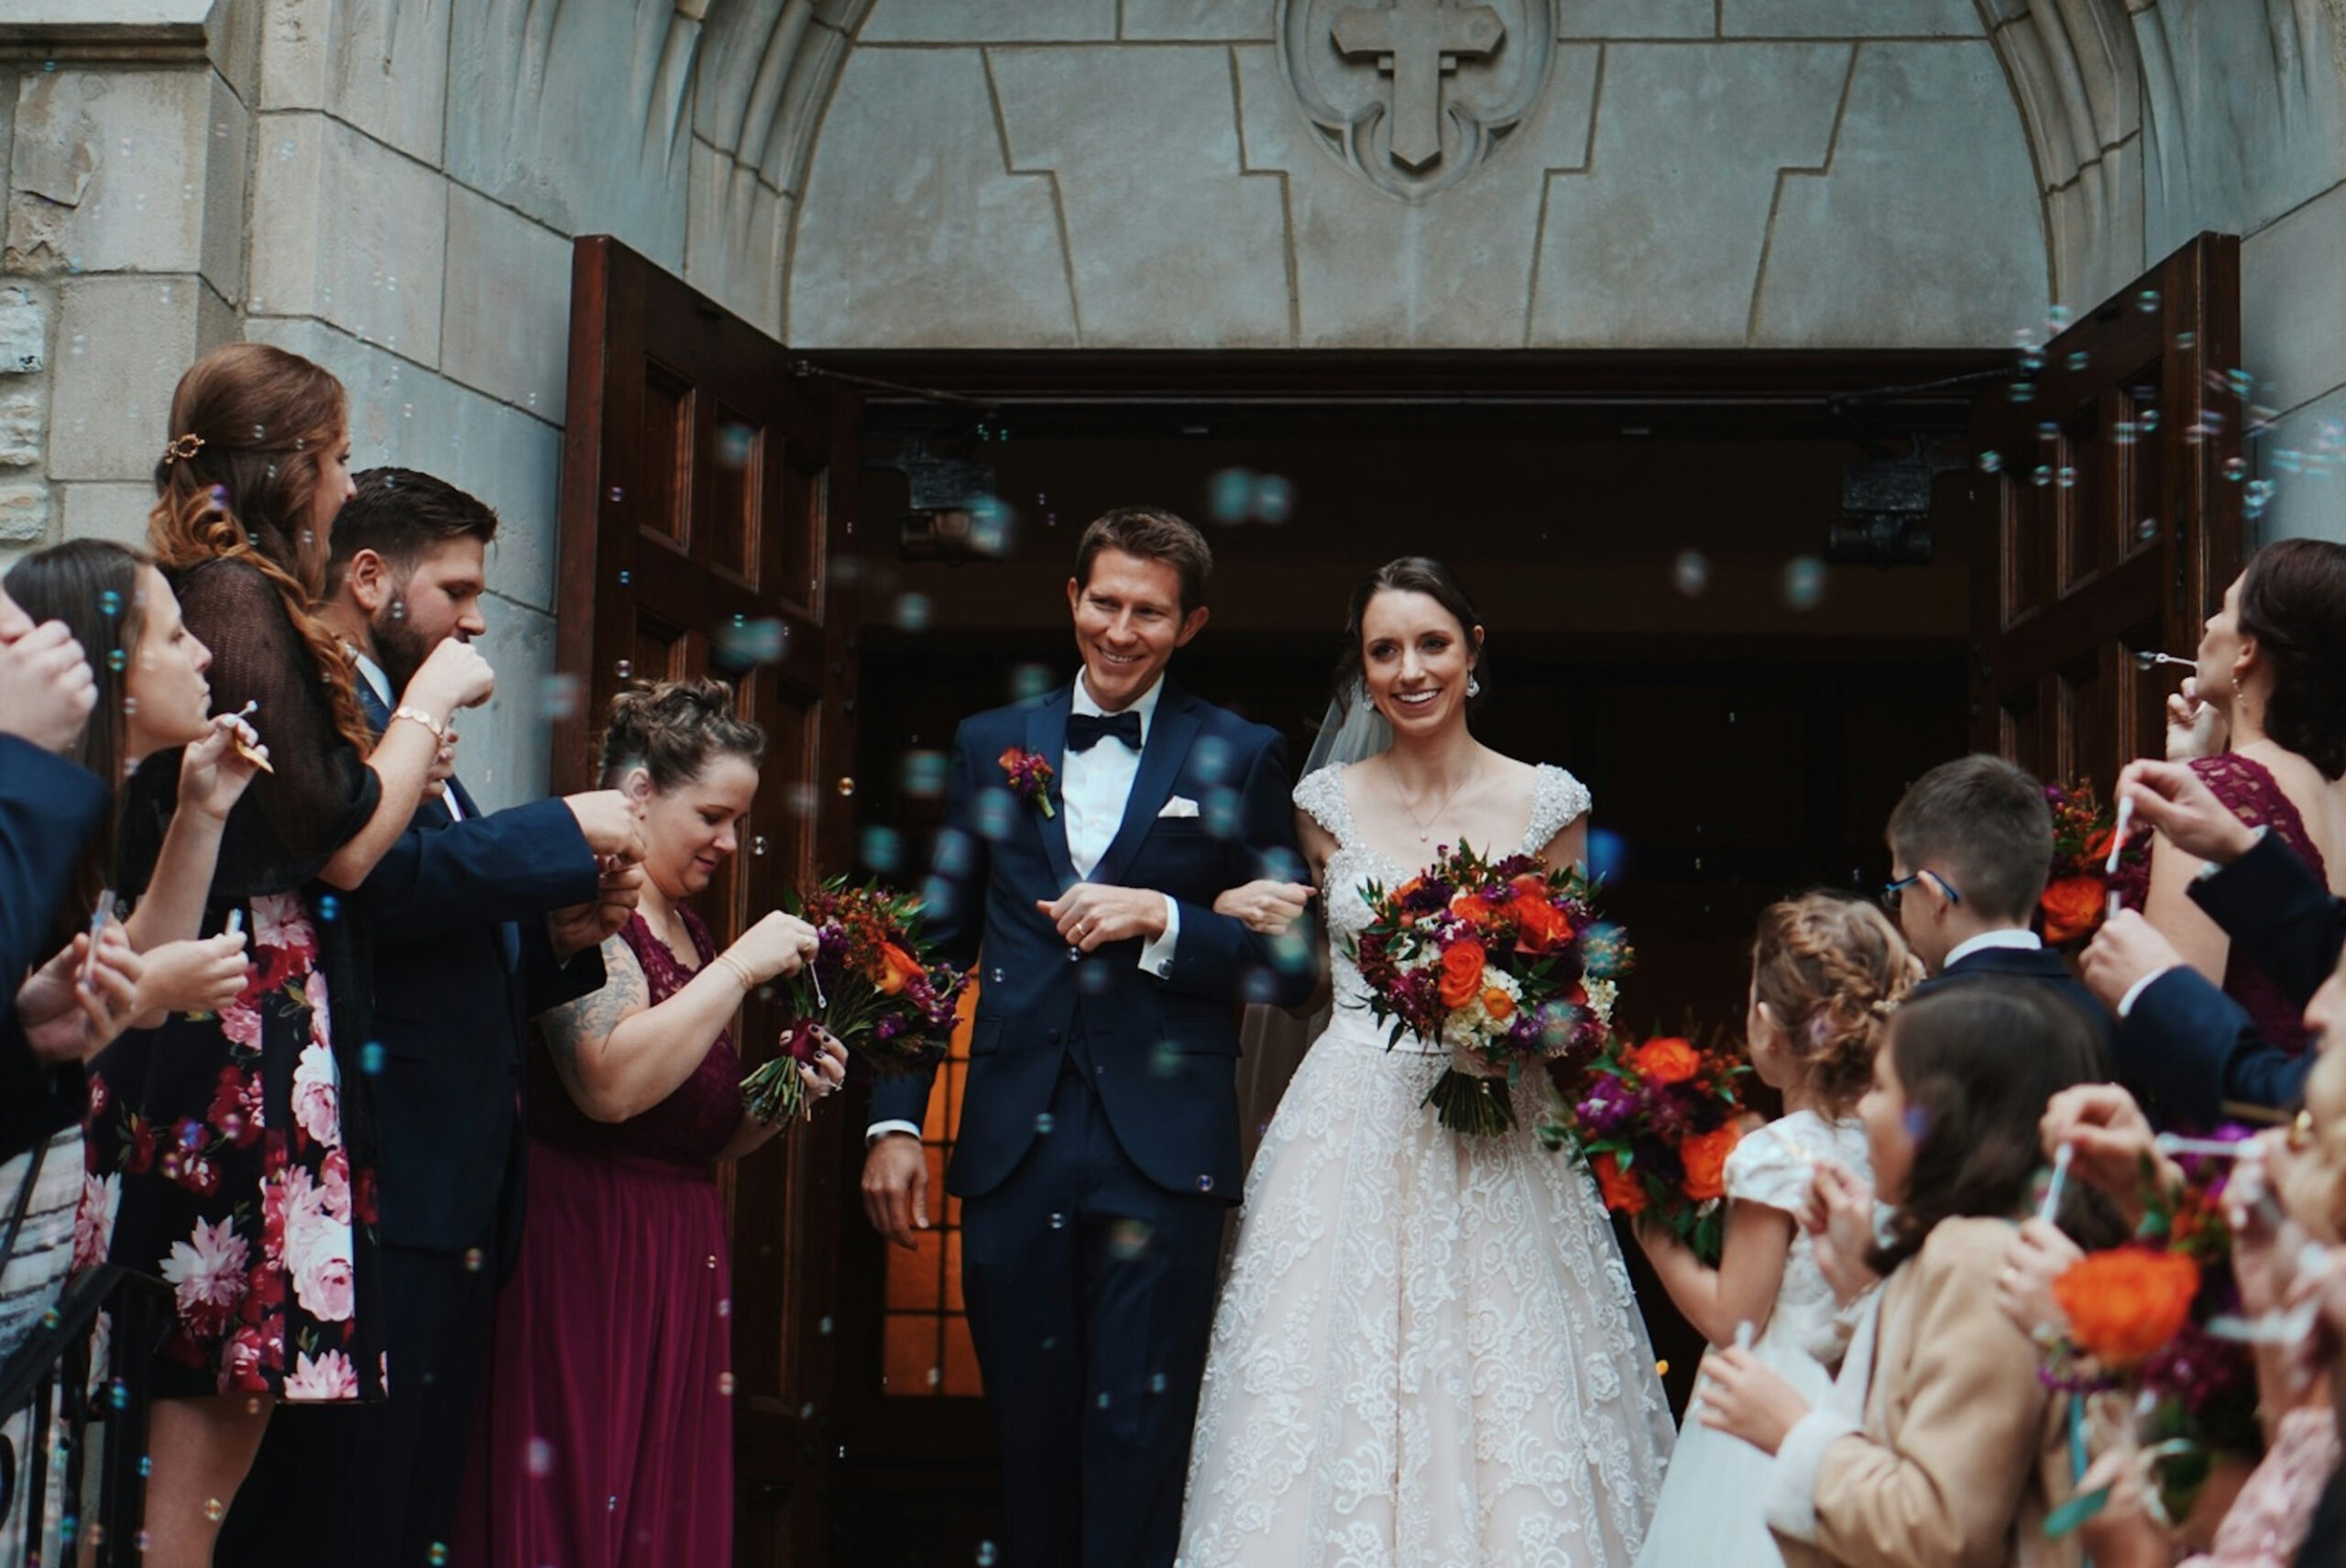 Dátum svadby - nepodstatný detail, alebo rozhodujúci vplyv na budúce manželstvo?